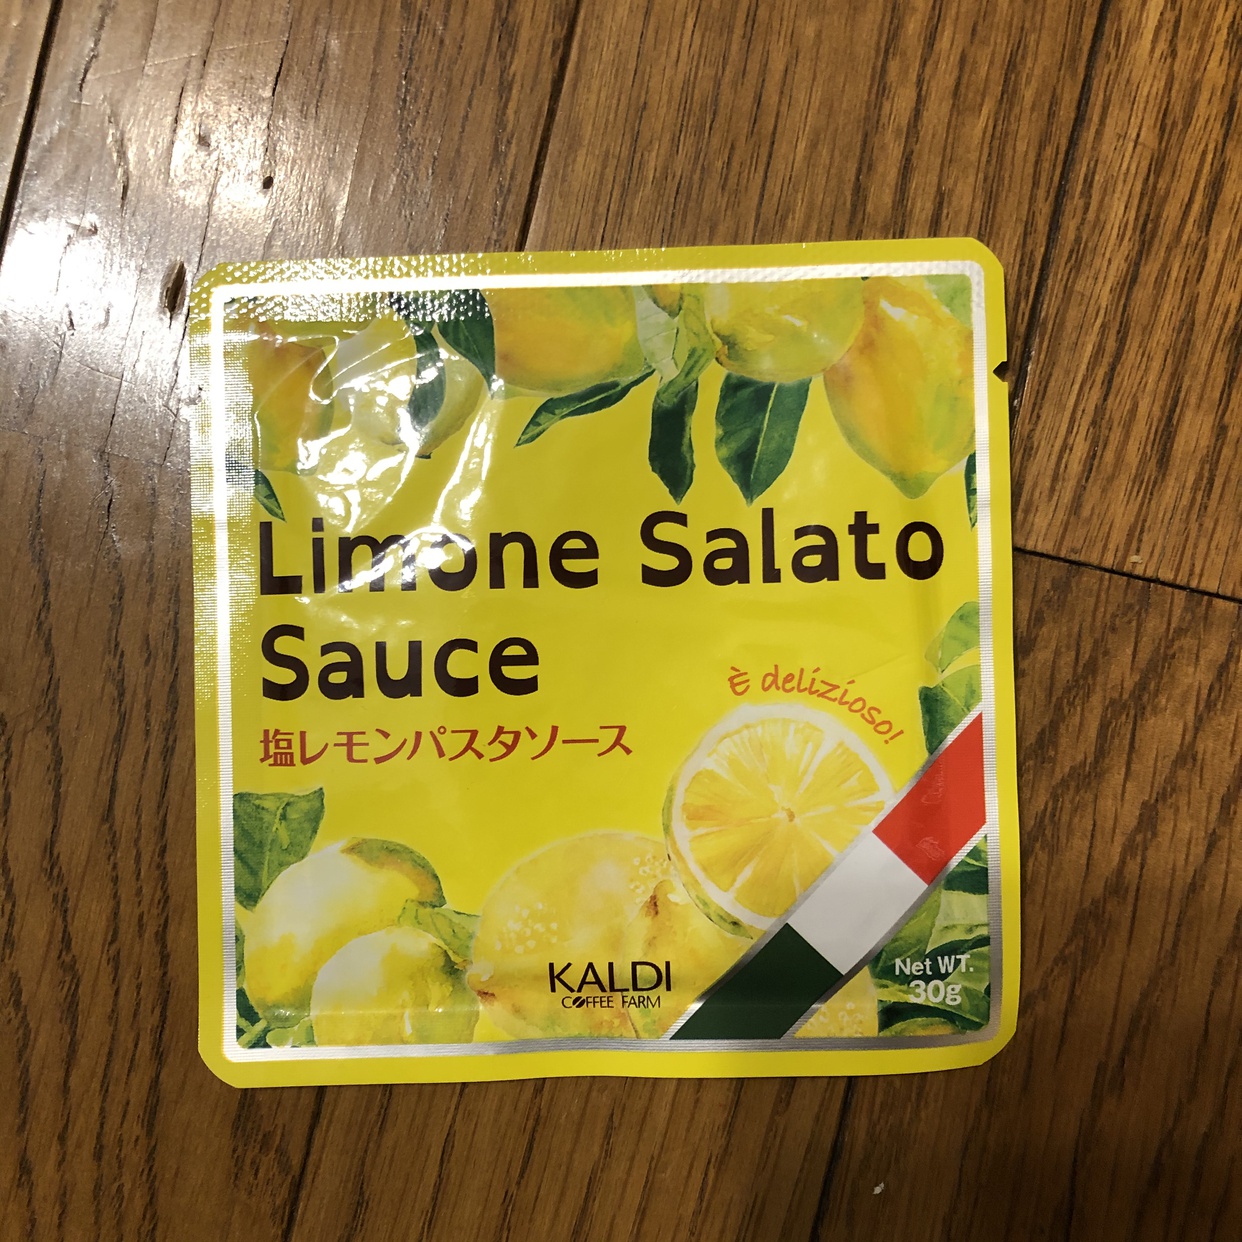 KALDI(カルディ) 塩レモンパスタソースの良い点・メリットに関するhappy☆fridayさんの口コミ画像1